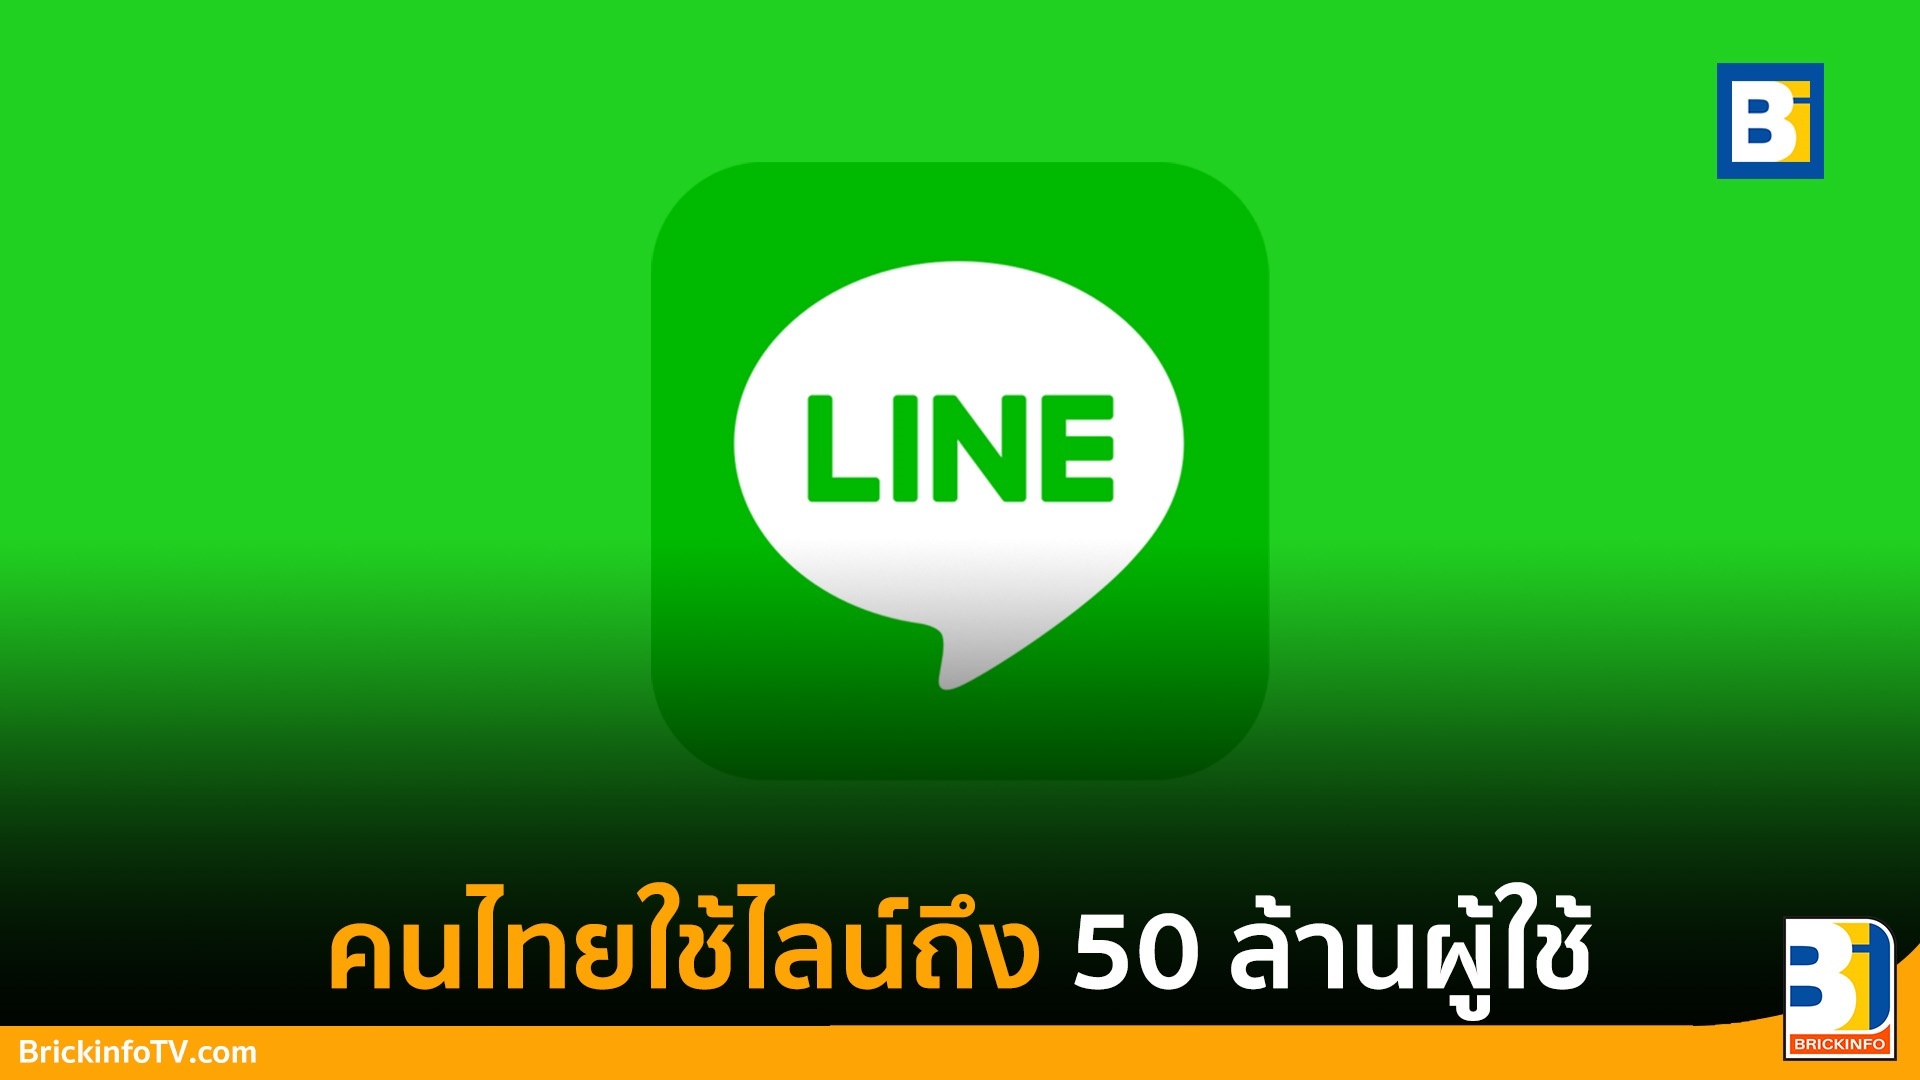 คนไทยมี LINE กี่คน